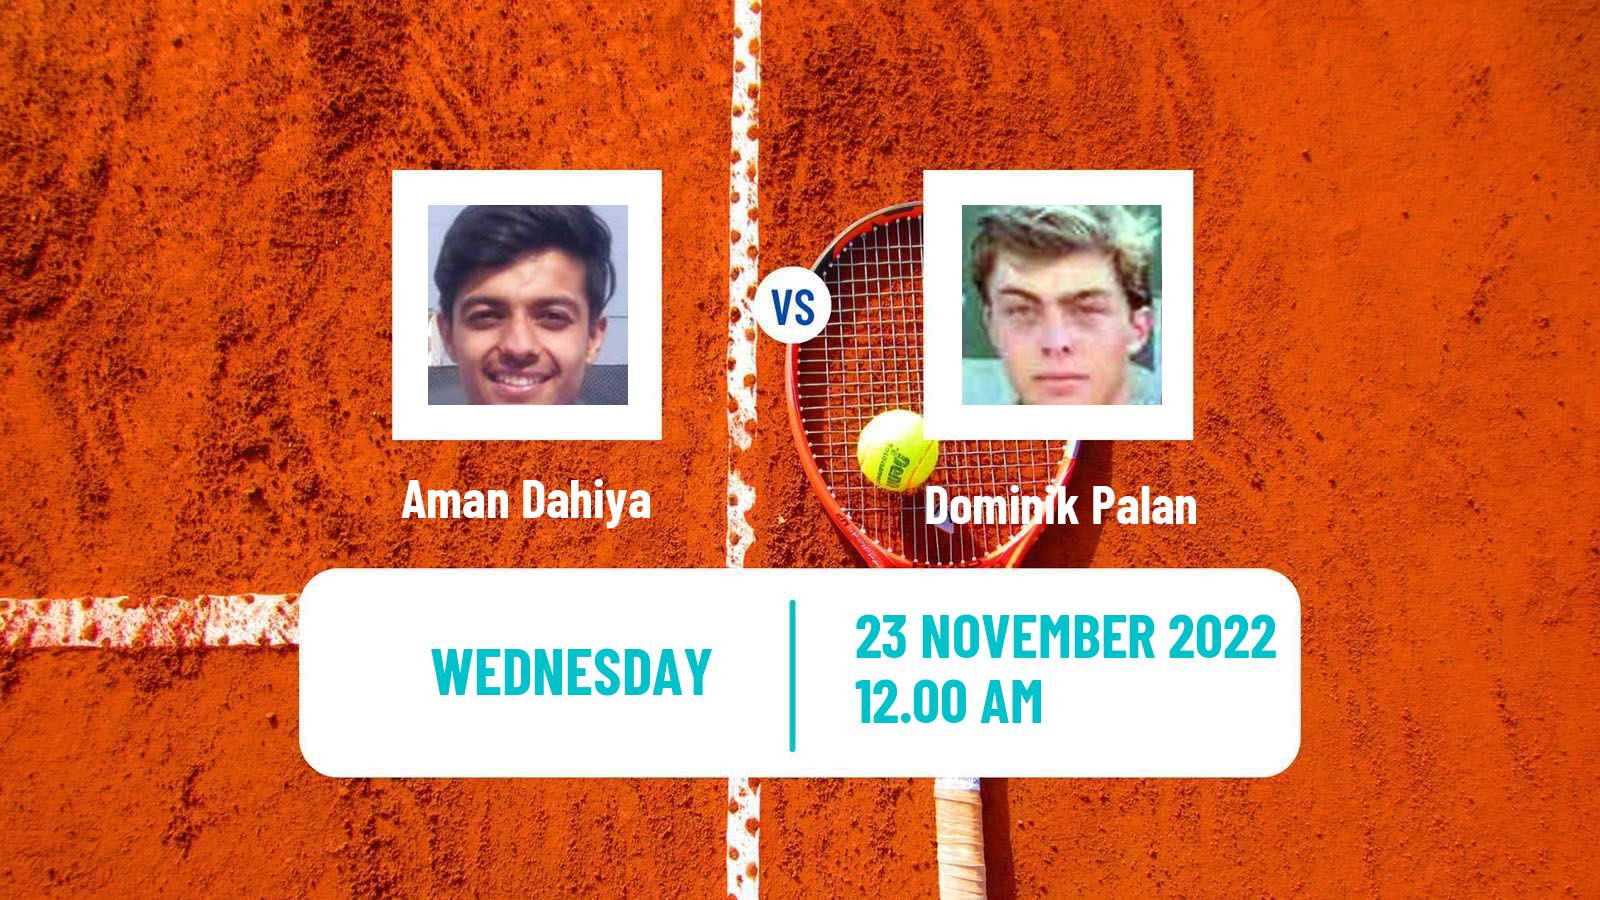 Tennis ITF Tournaments Aman Dahiya - Dominik Palan